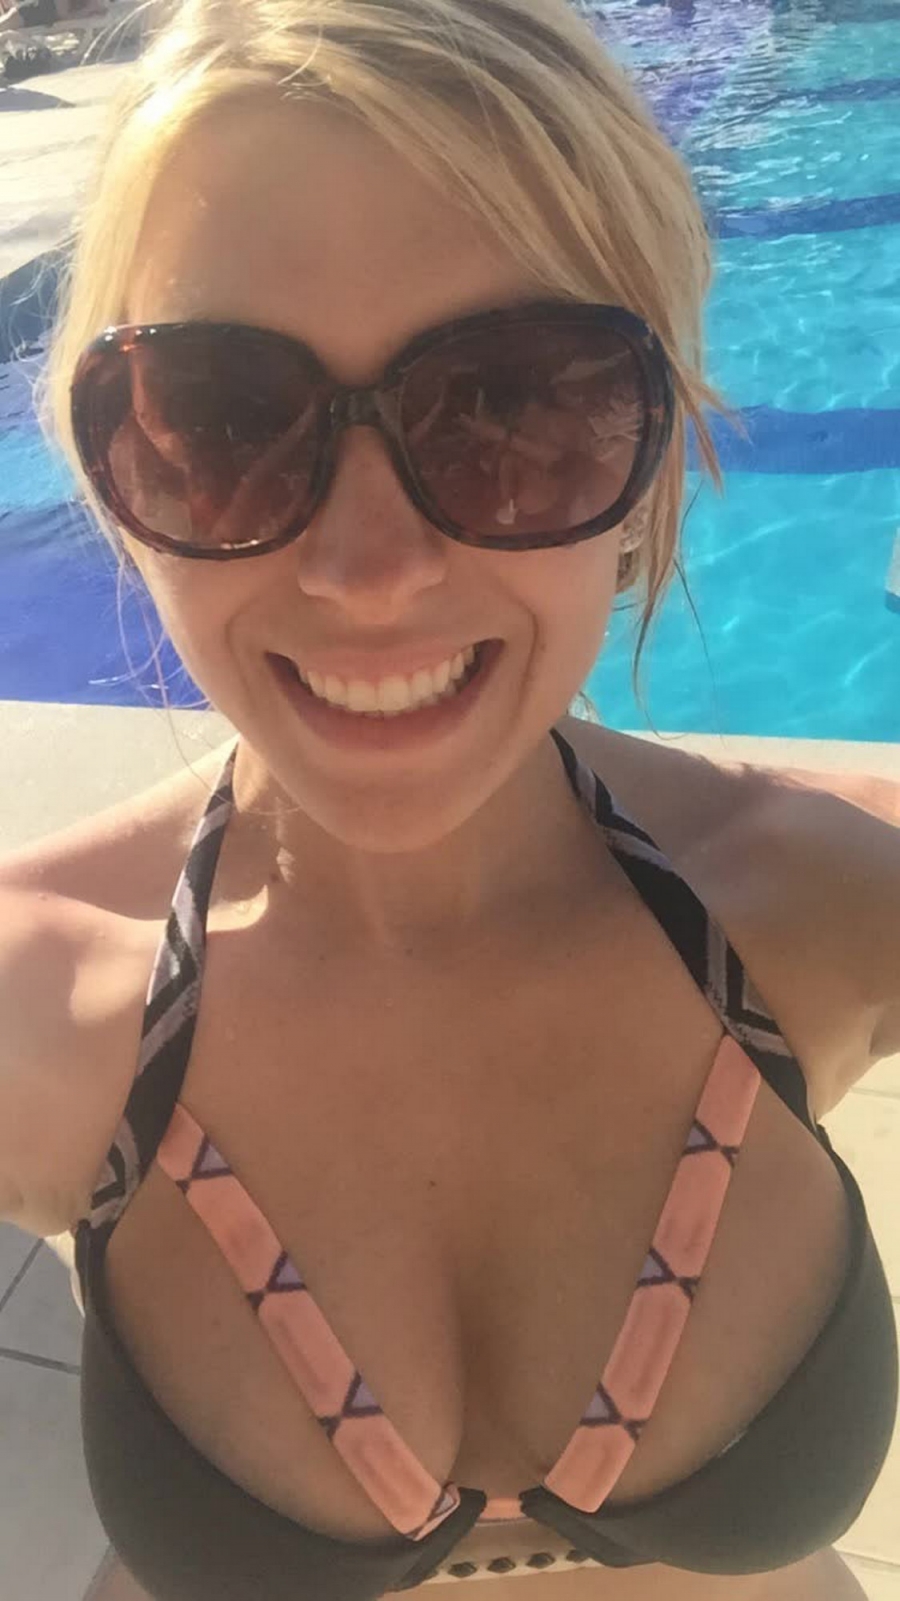 Bikini selfie at swimming pool